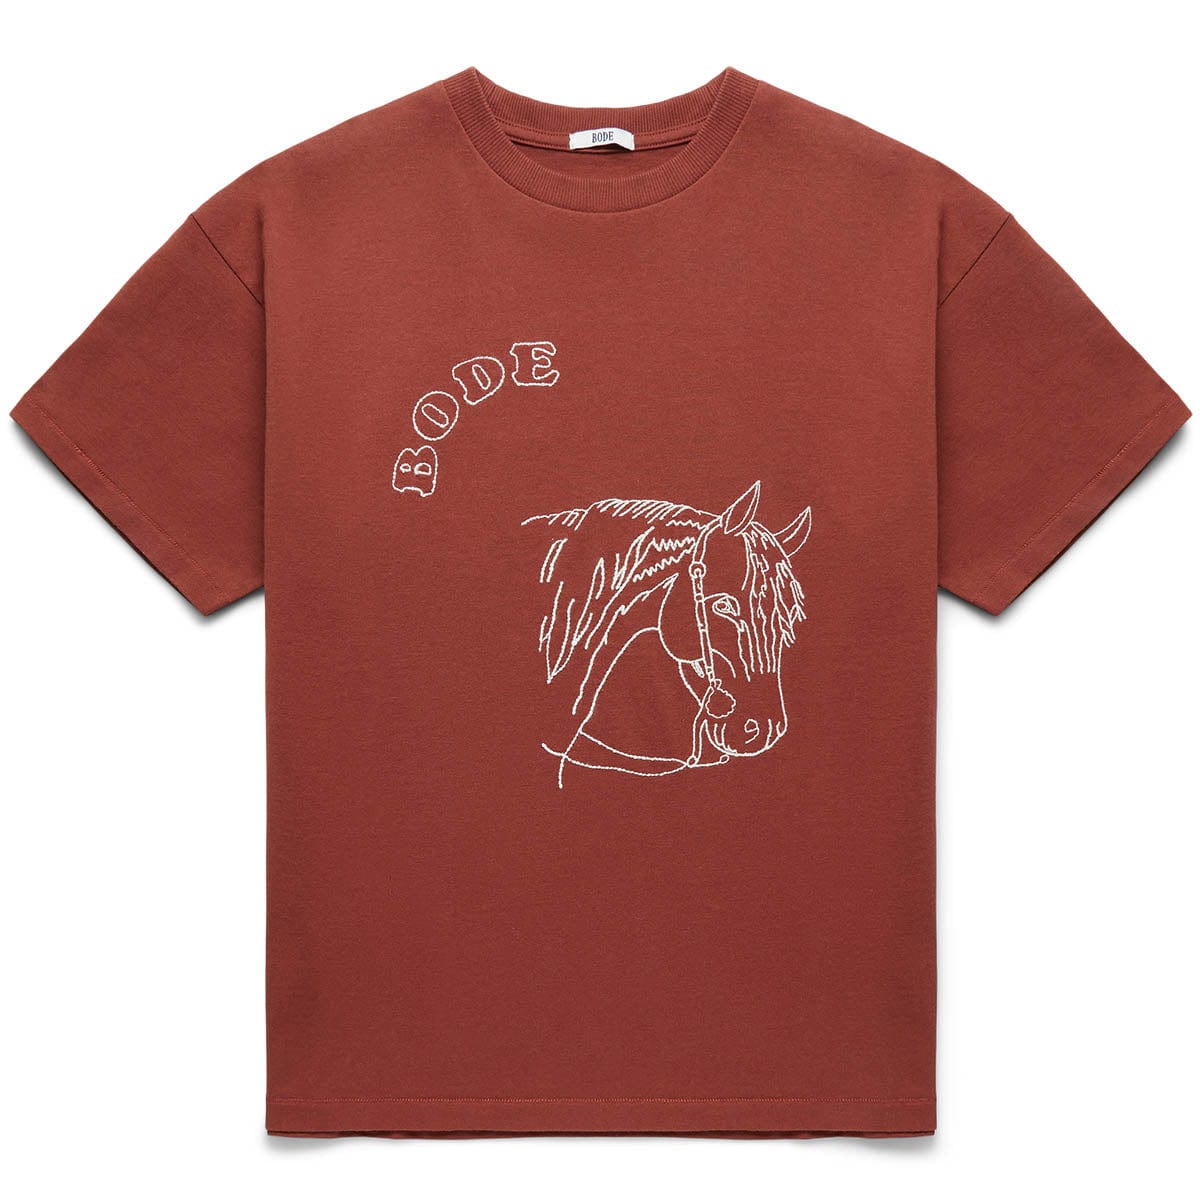 Erweitern Sie die Garderobe Ihrer dem T-Shirt mit Kleinen bezaubernden PONY Print einen - SHIRT - um Rooster GmarShops von T | EMBROIDERED BROWN